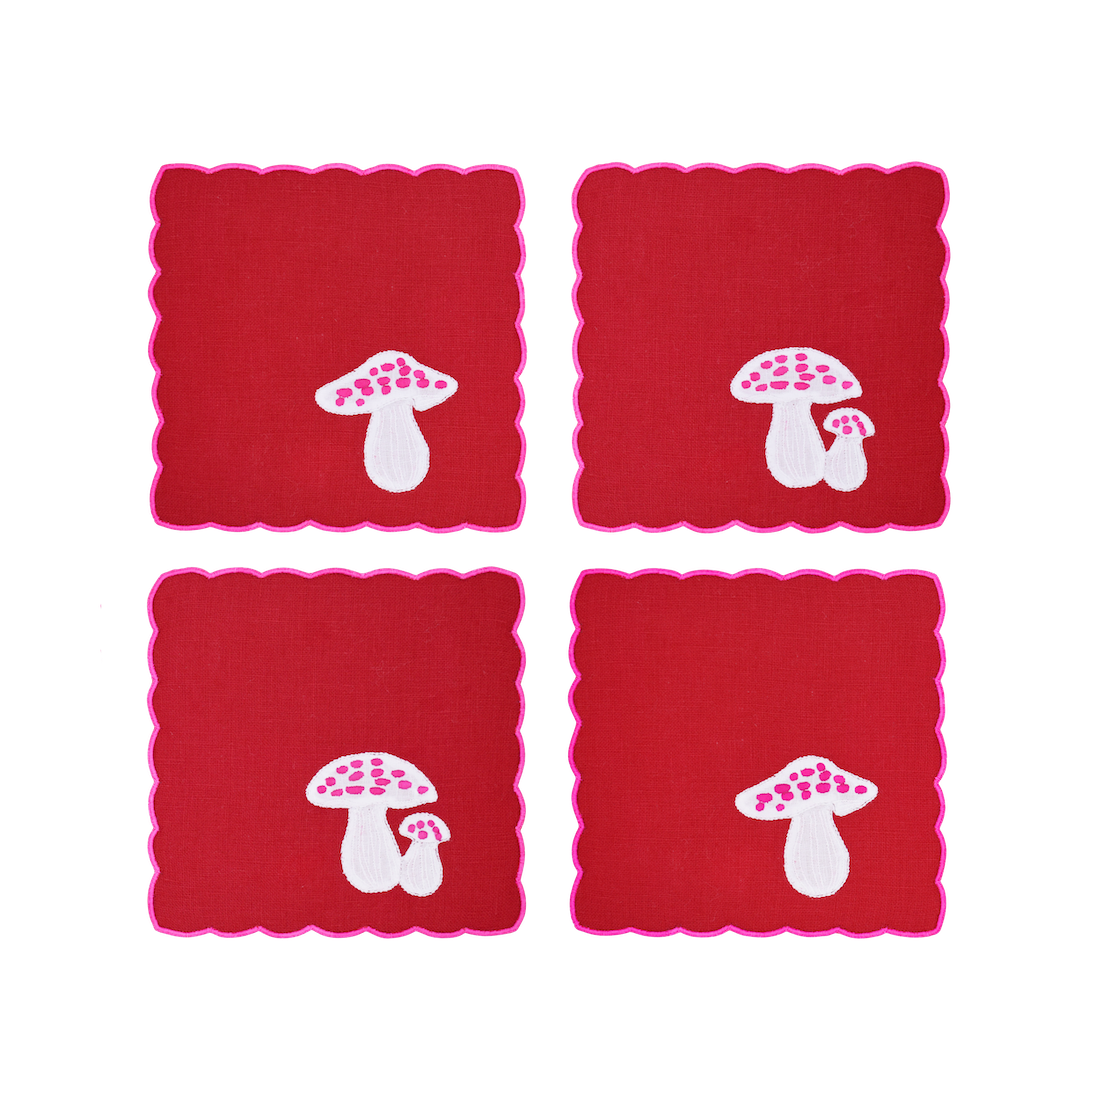 Mushroom Cocktail Napkins, Red & Pink, Set of 4